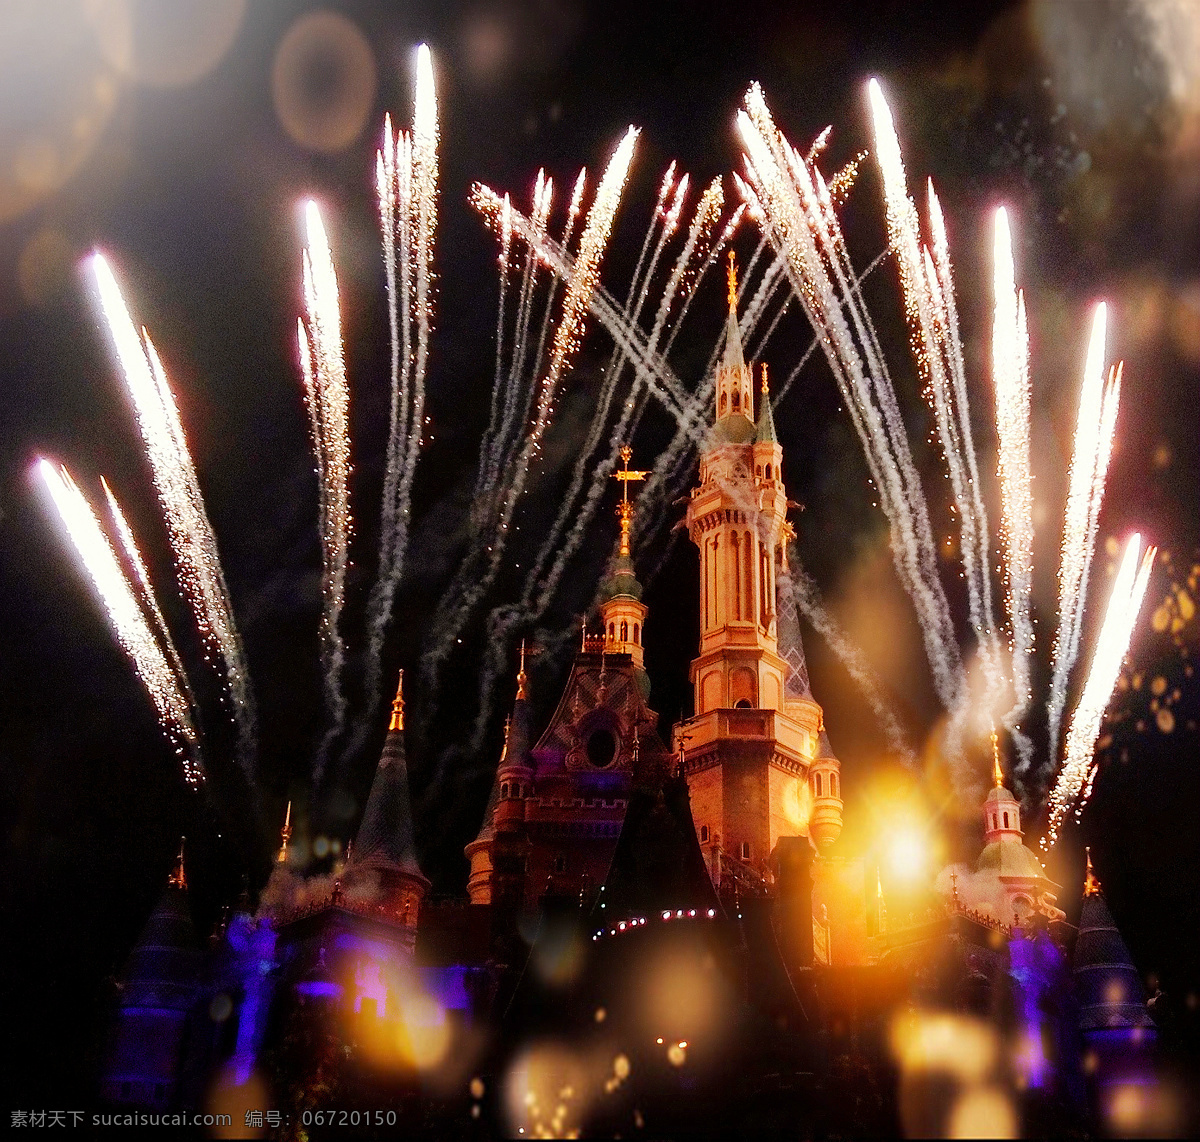 上海 迪士尼 乐园 焰火 表演 迪士尼乐园 迪斯尼 城堡 烟火 夜景 旅游摄影 国内旅游